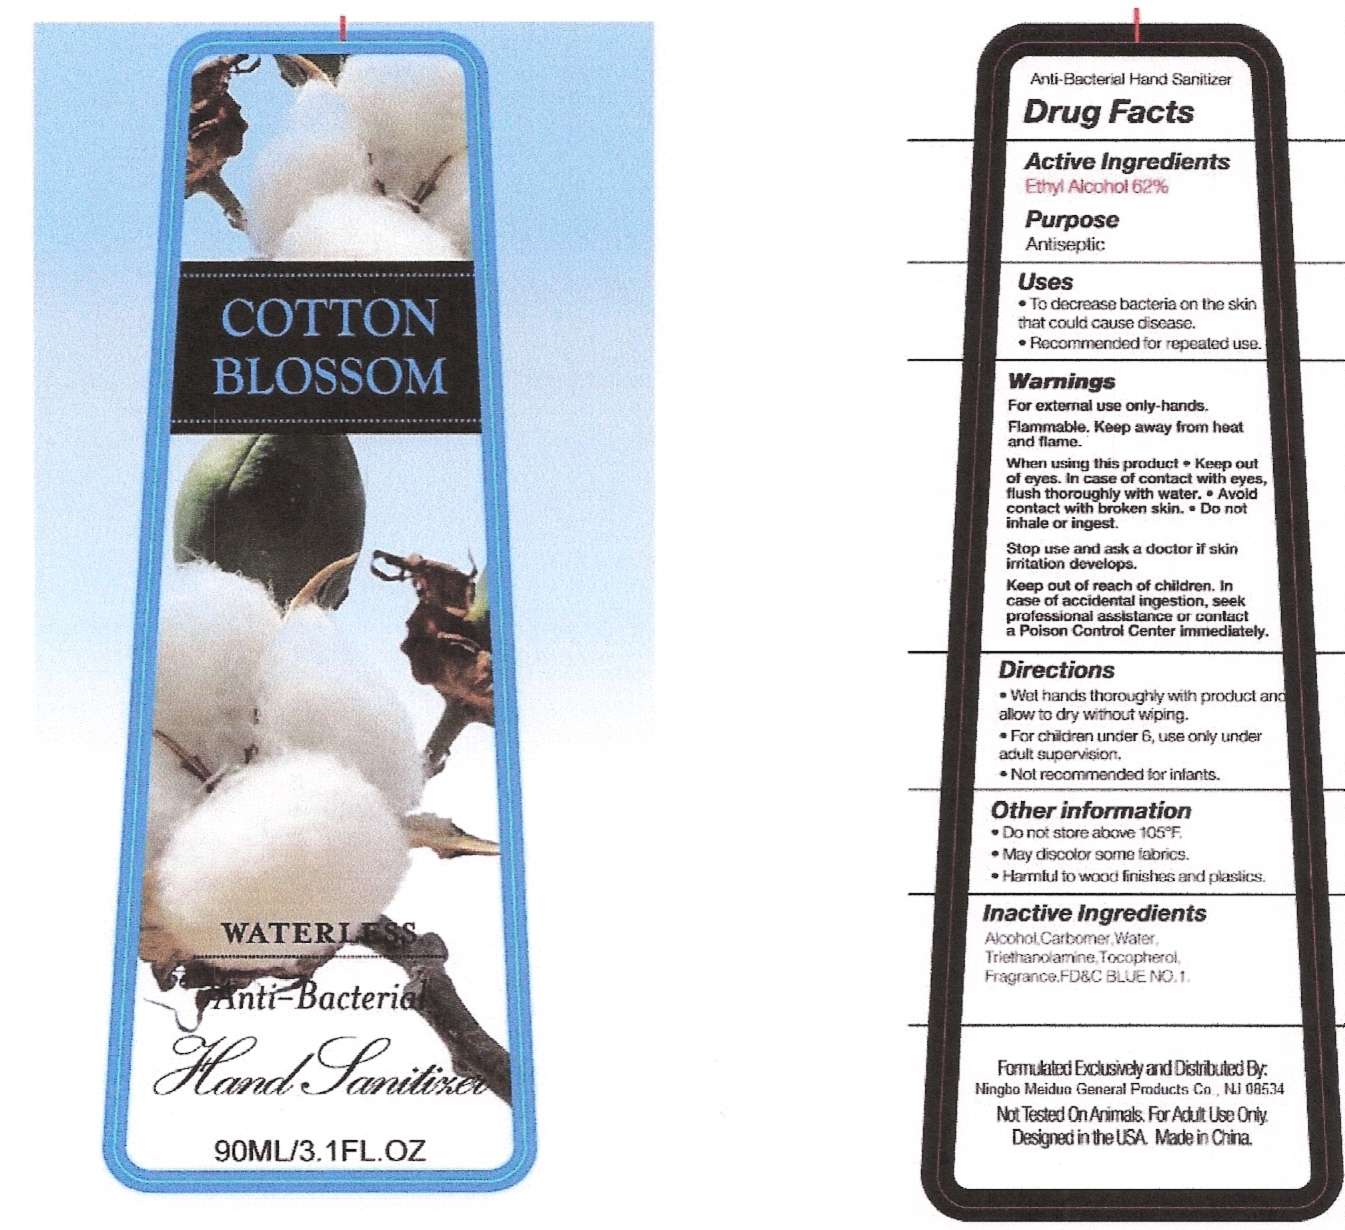 Cotton Blossom Waterless Anti-Antibateria Hand Sanitizer